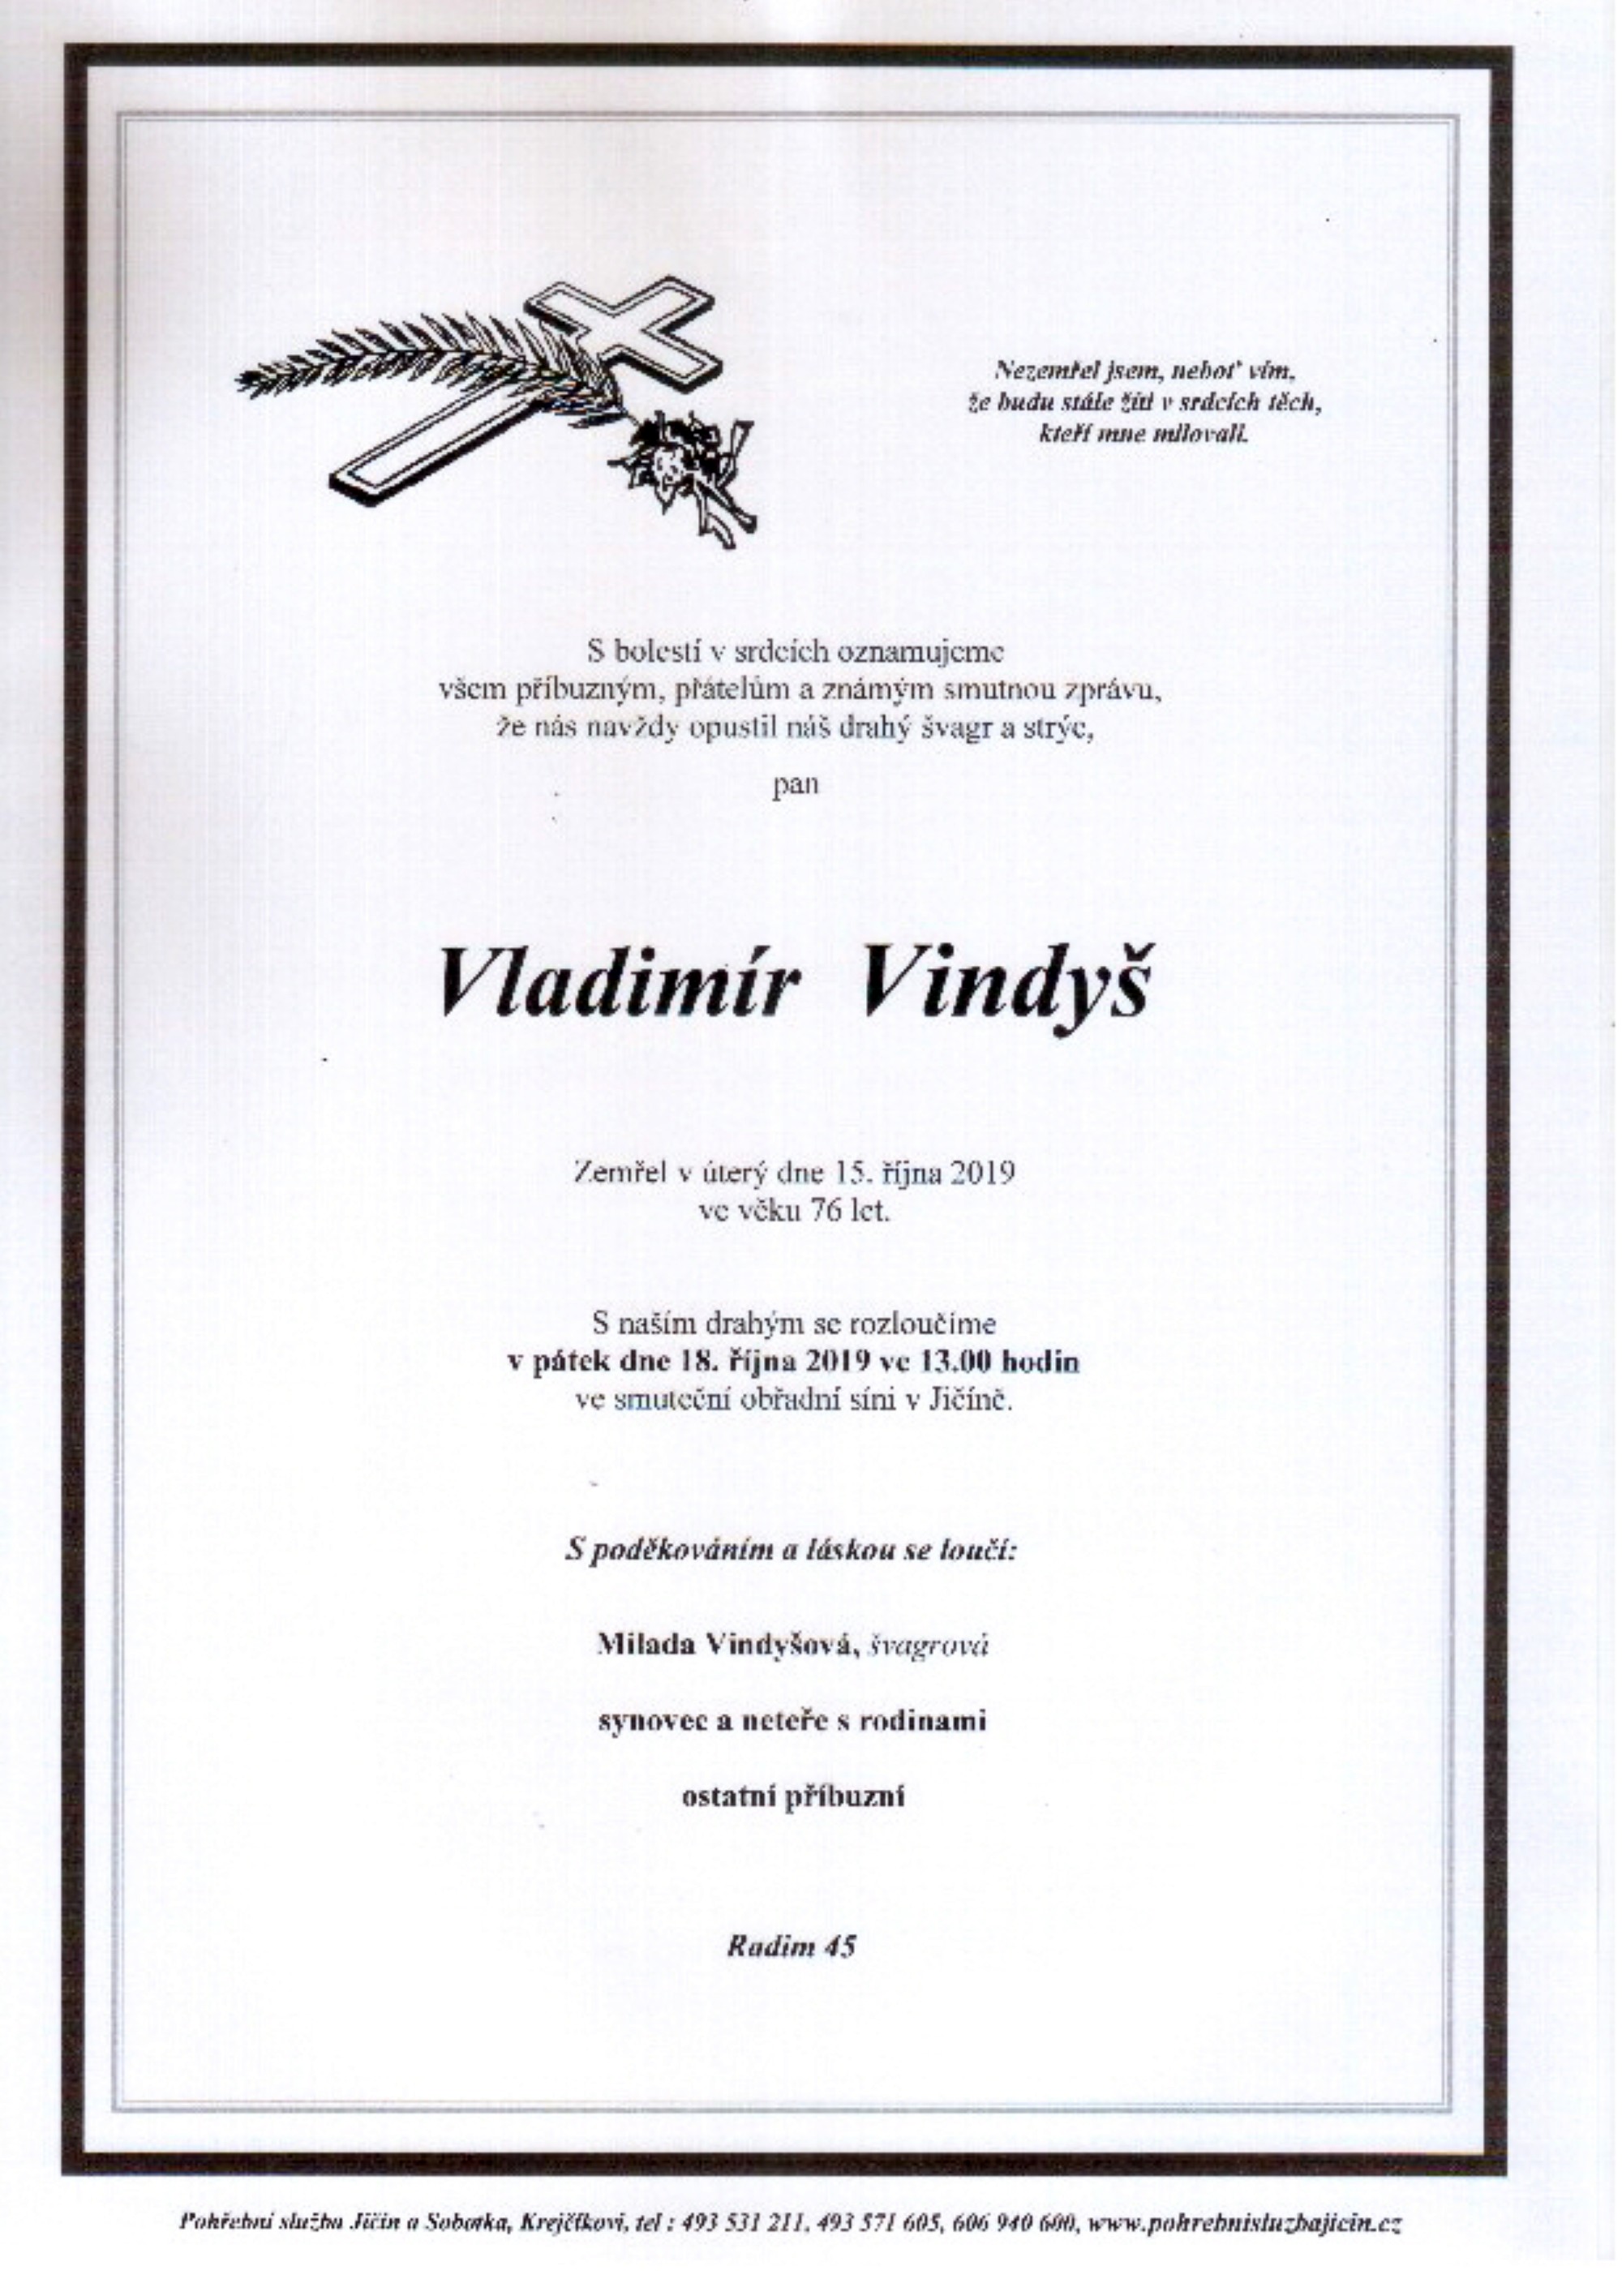 Vladimír Vindyš